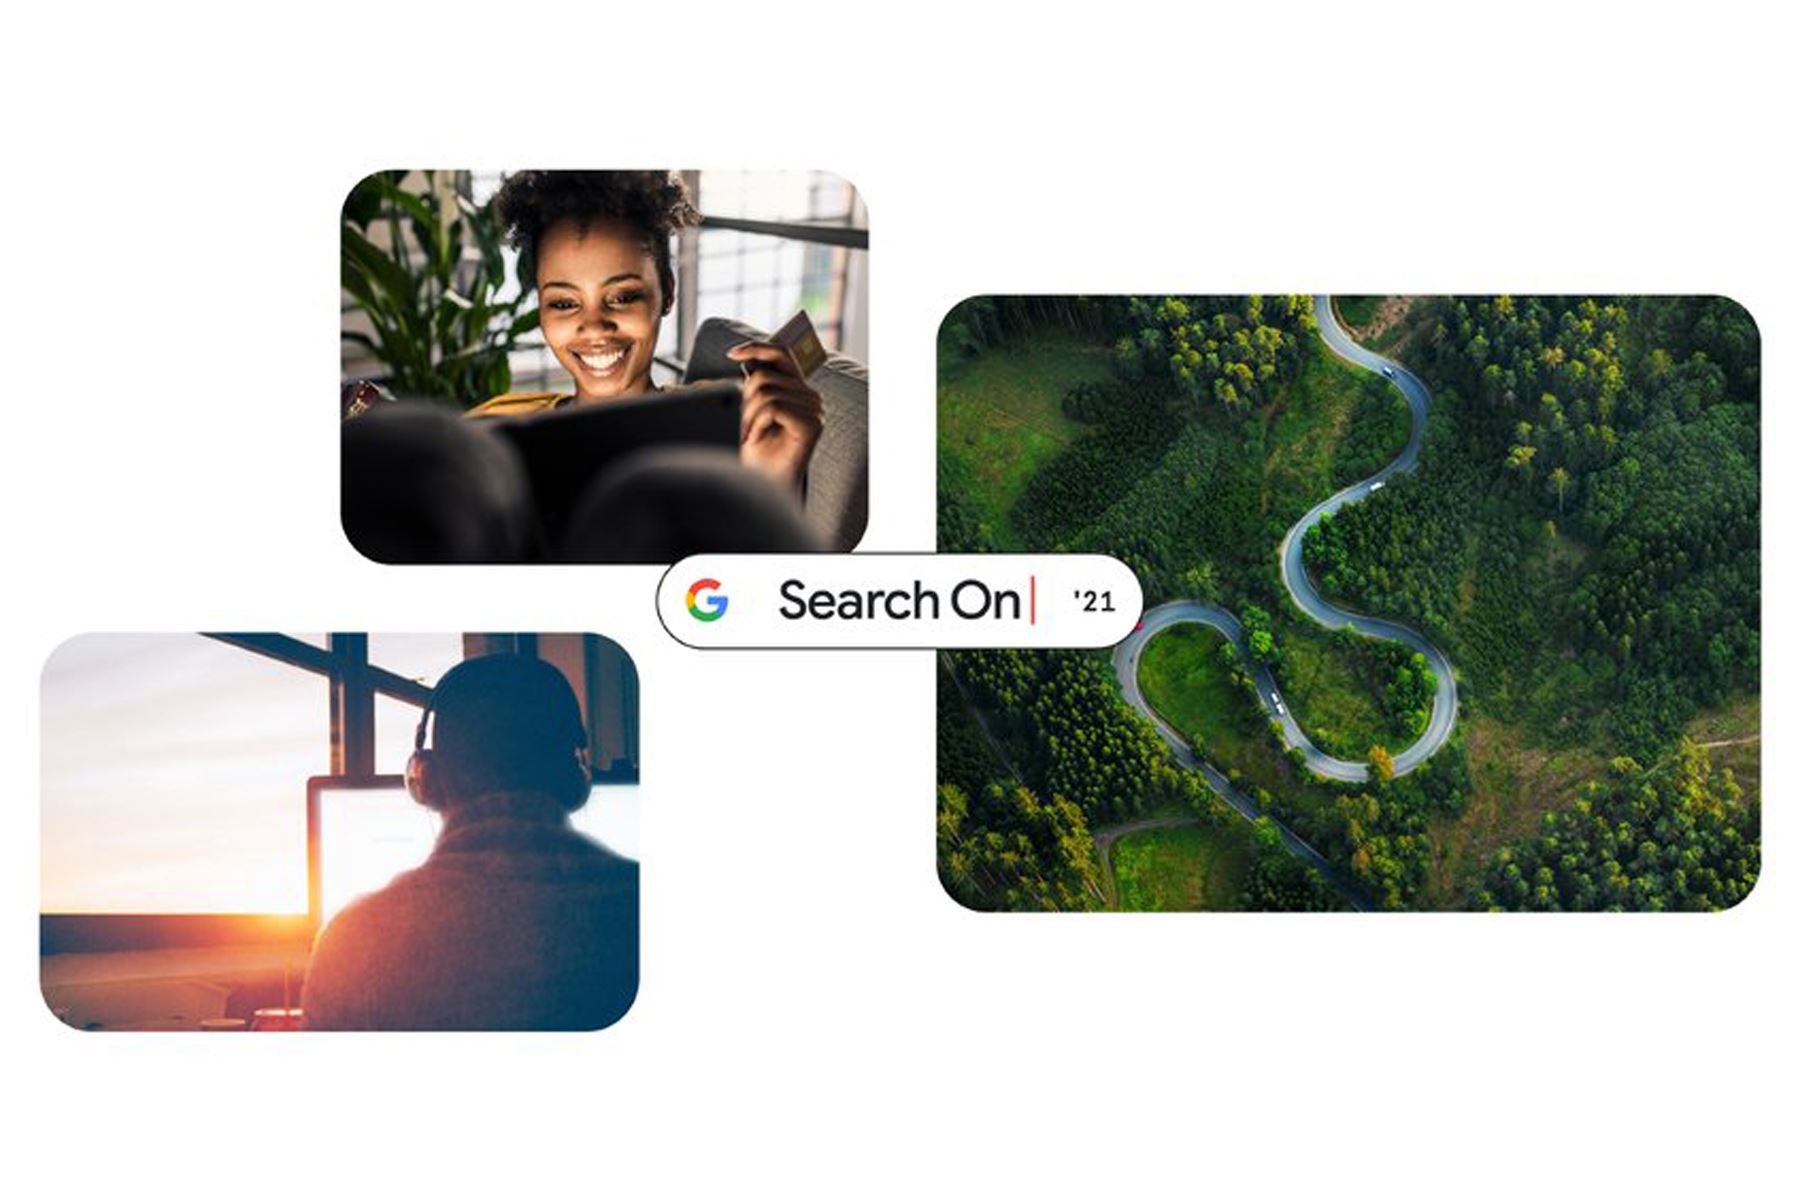 Durante el evento, Google estimó que las búsquedas con nuevos cambios en la IA hará que los usuarios puedan encontrar mejores resultados en imágenes y videos. Foto: Google